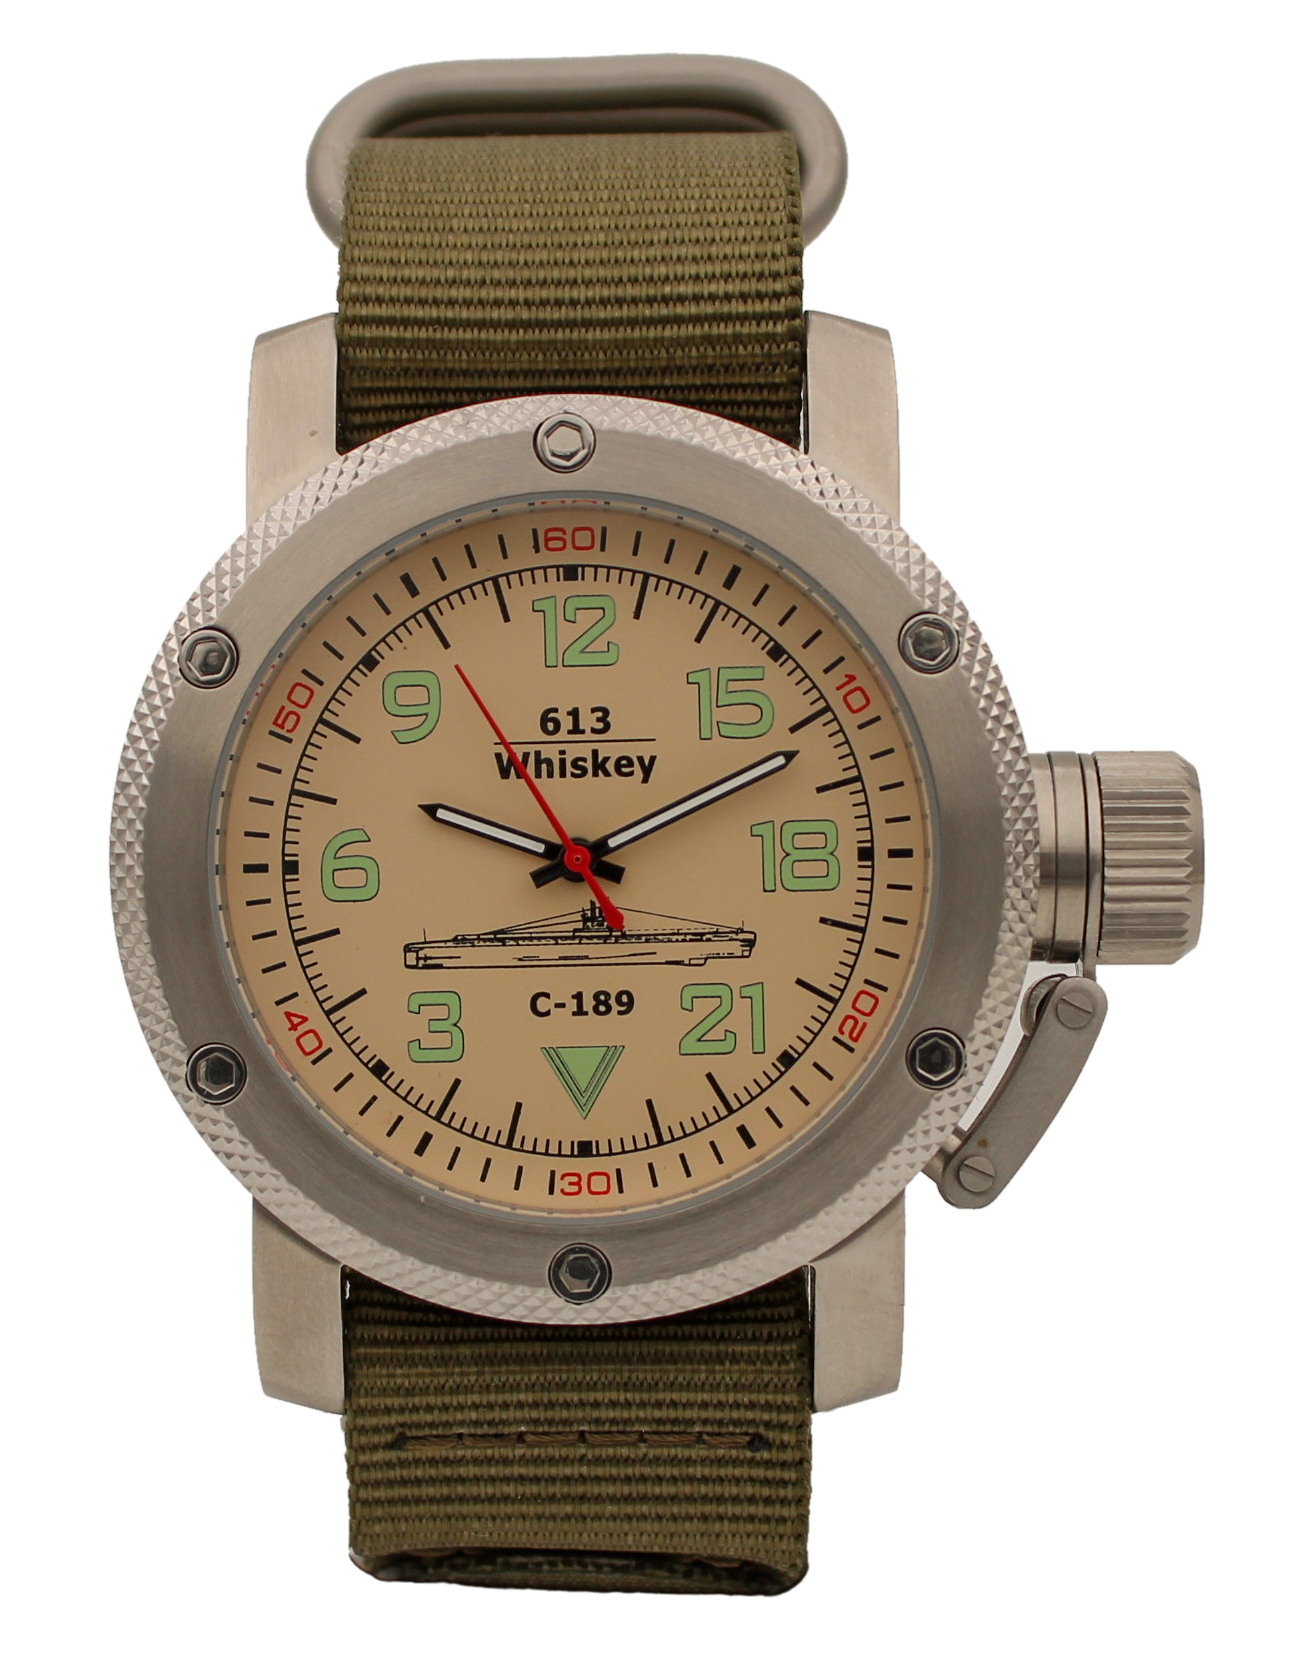 Наручные часы мужские Watch Triumph С-189 (Whiskey)